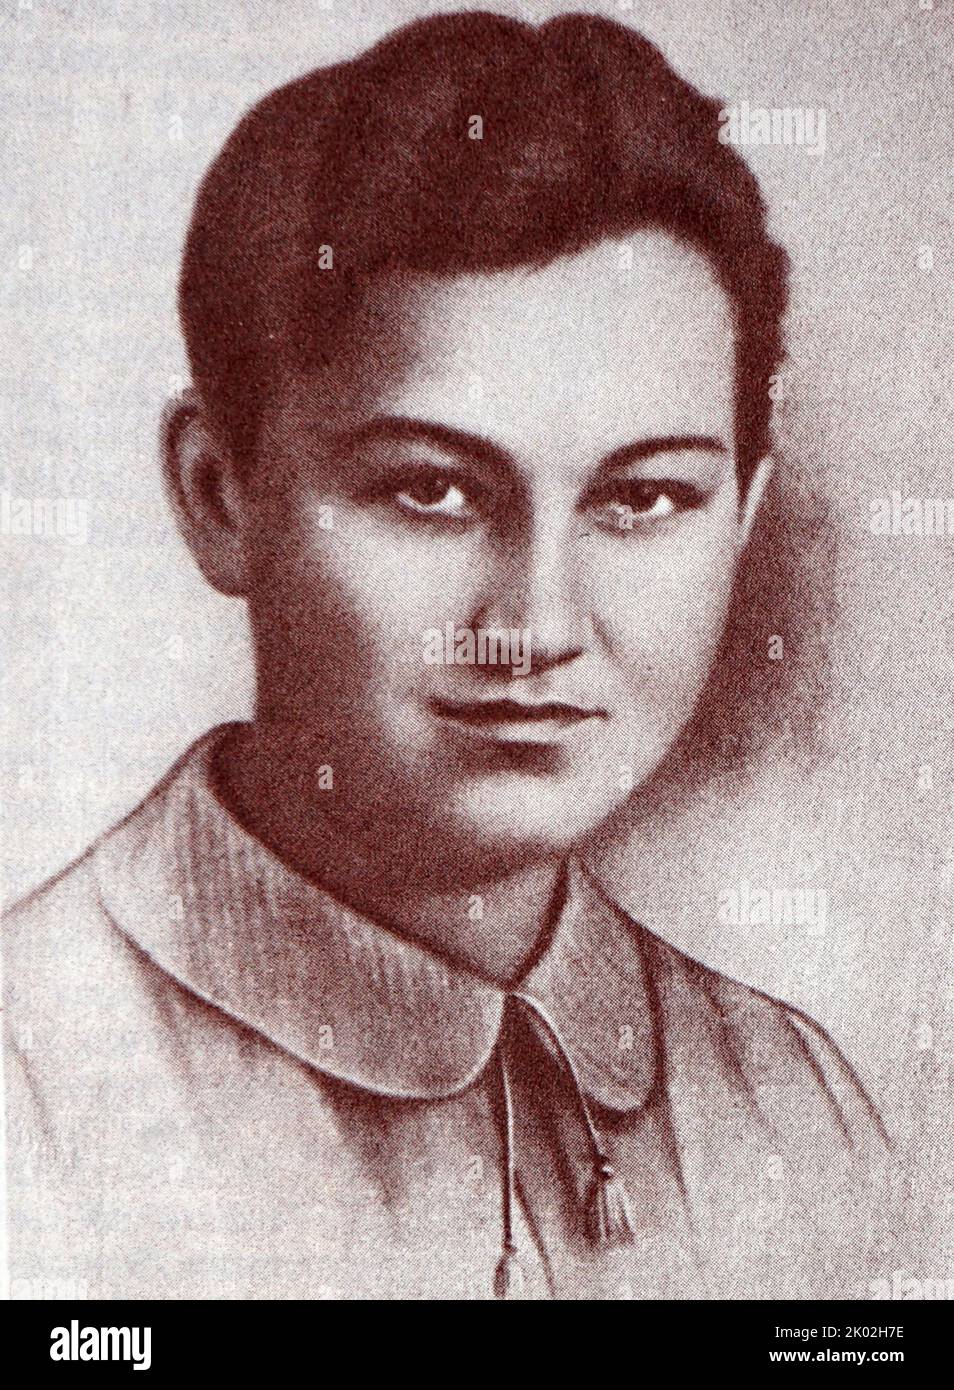 Soja Anatoljewna Kosmodemyanskaja (1923 - 1941) sowjetischer Partisane. Sie wurde nach Sabotageakten gegen die einmarschierenden Armeen Nazi-Deutschlands hingerichtet, und nachdem Geschichten über ihren Trotz gegenüber ihren Entführer auftauchten, wurde sie posthum zur Helden der Sowjetunion erklärt Stockfoto